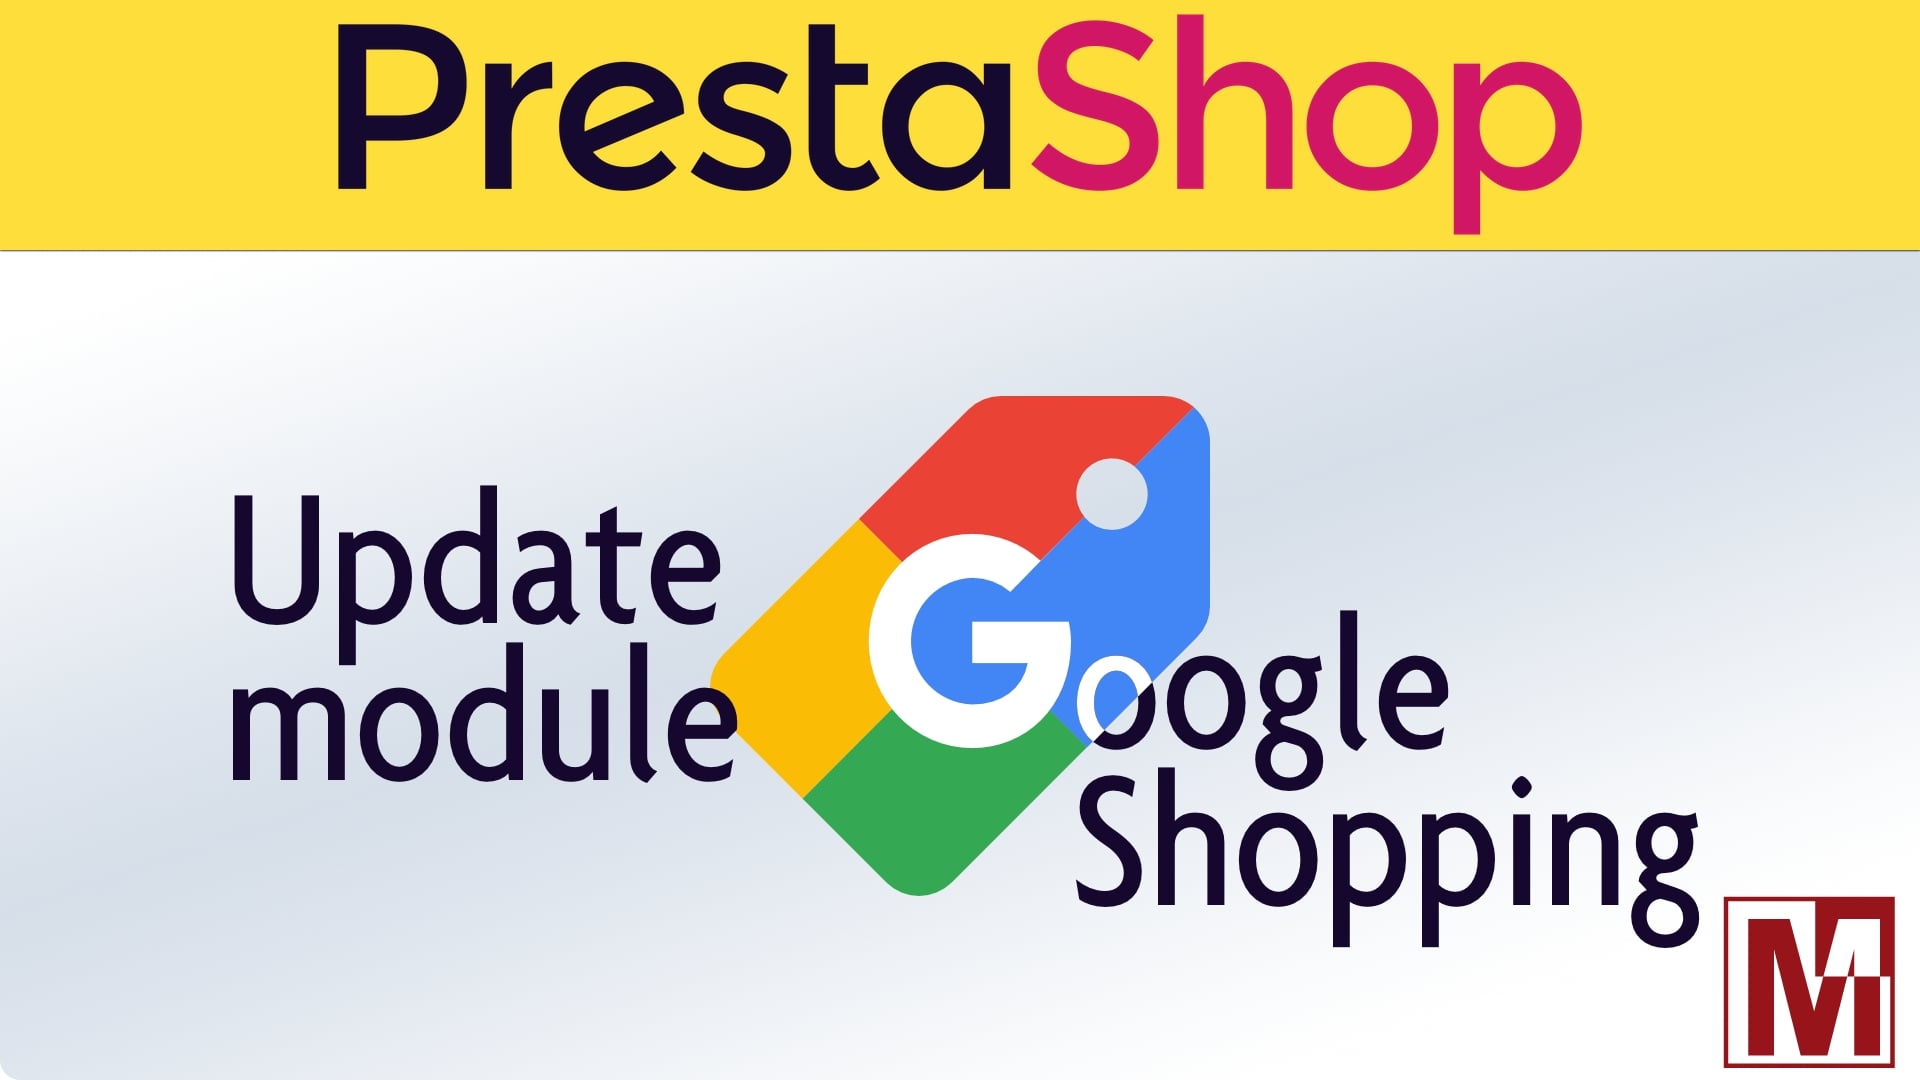 Mise à jour du module google Shopping pour PrestaShop et thirtybees